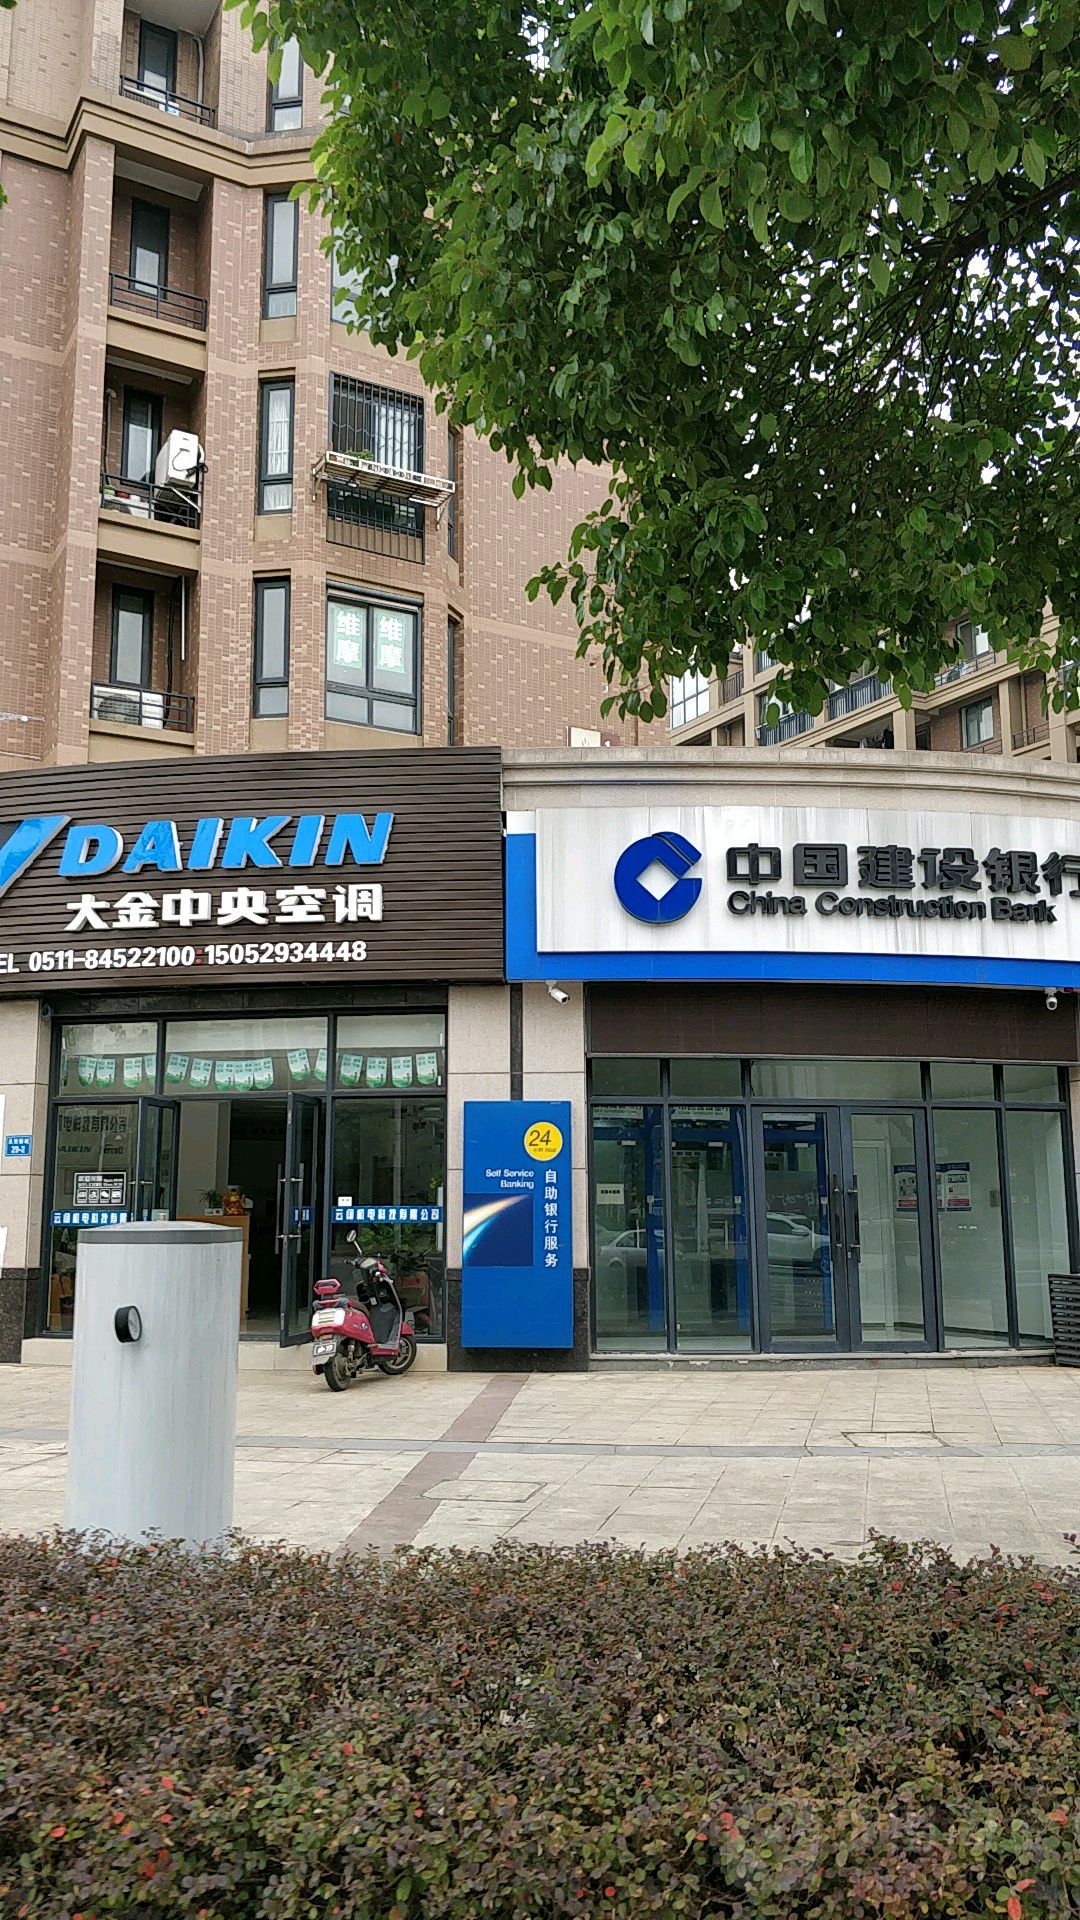 中國建設銀行24小時自助銀行(勤政路店)